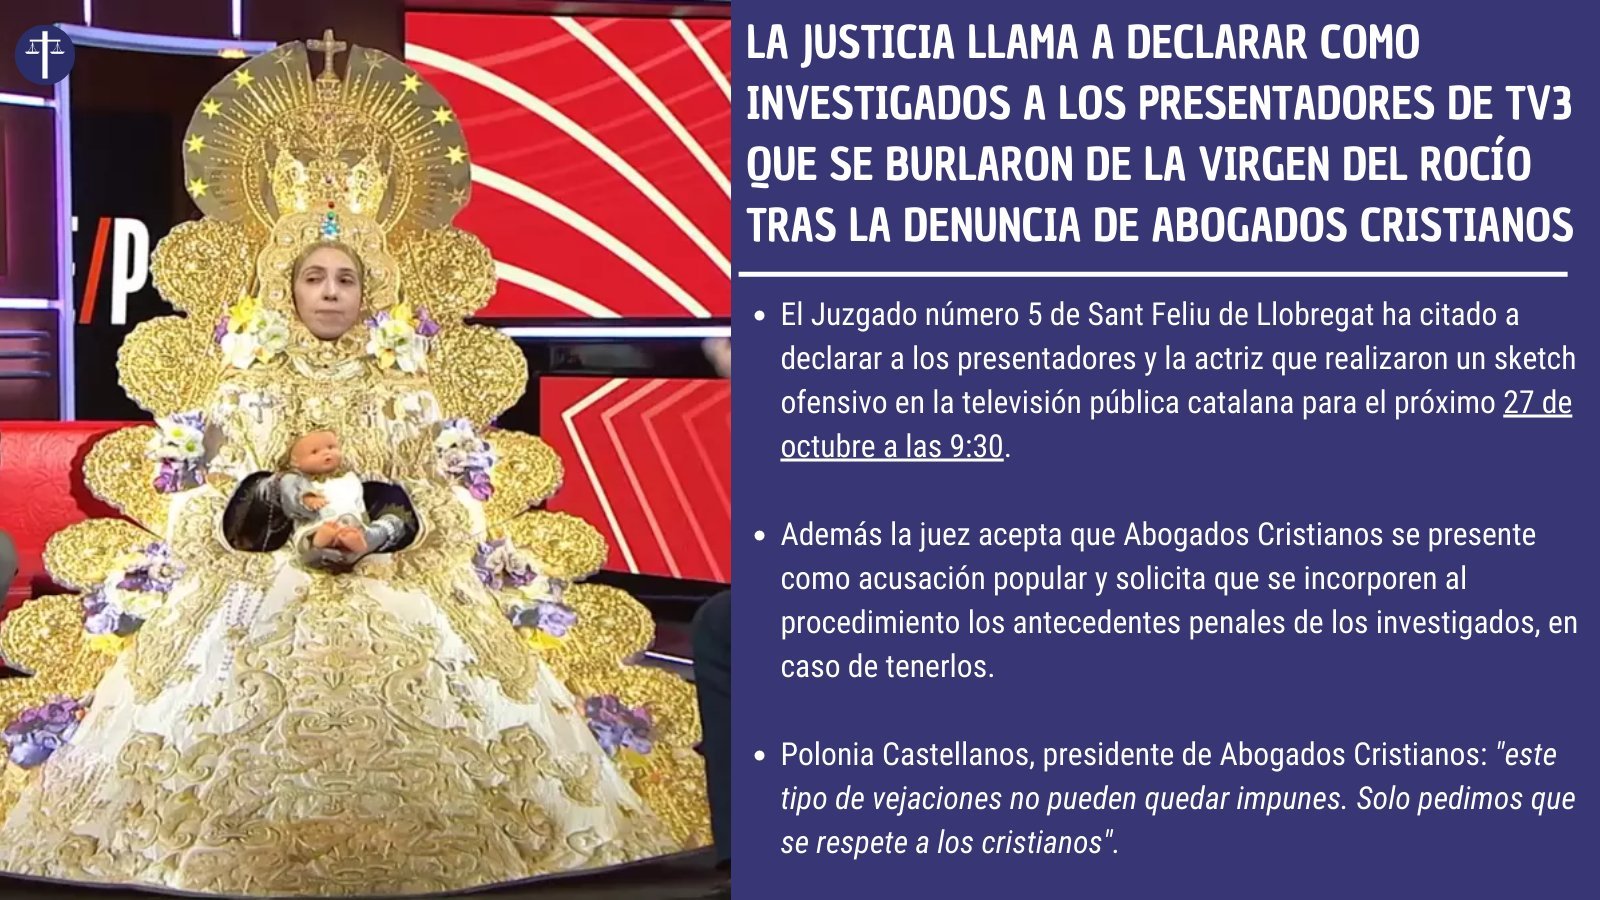 La sosegada reflexión de una cómica andaluza sobre TV3 y la Virgen del Rocío  que merece la pena oír